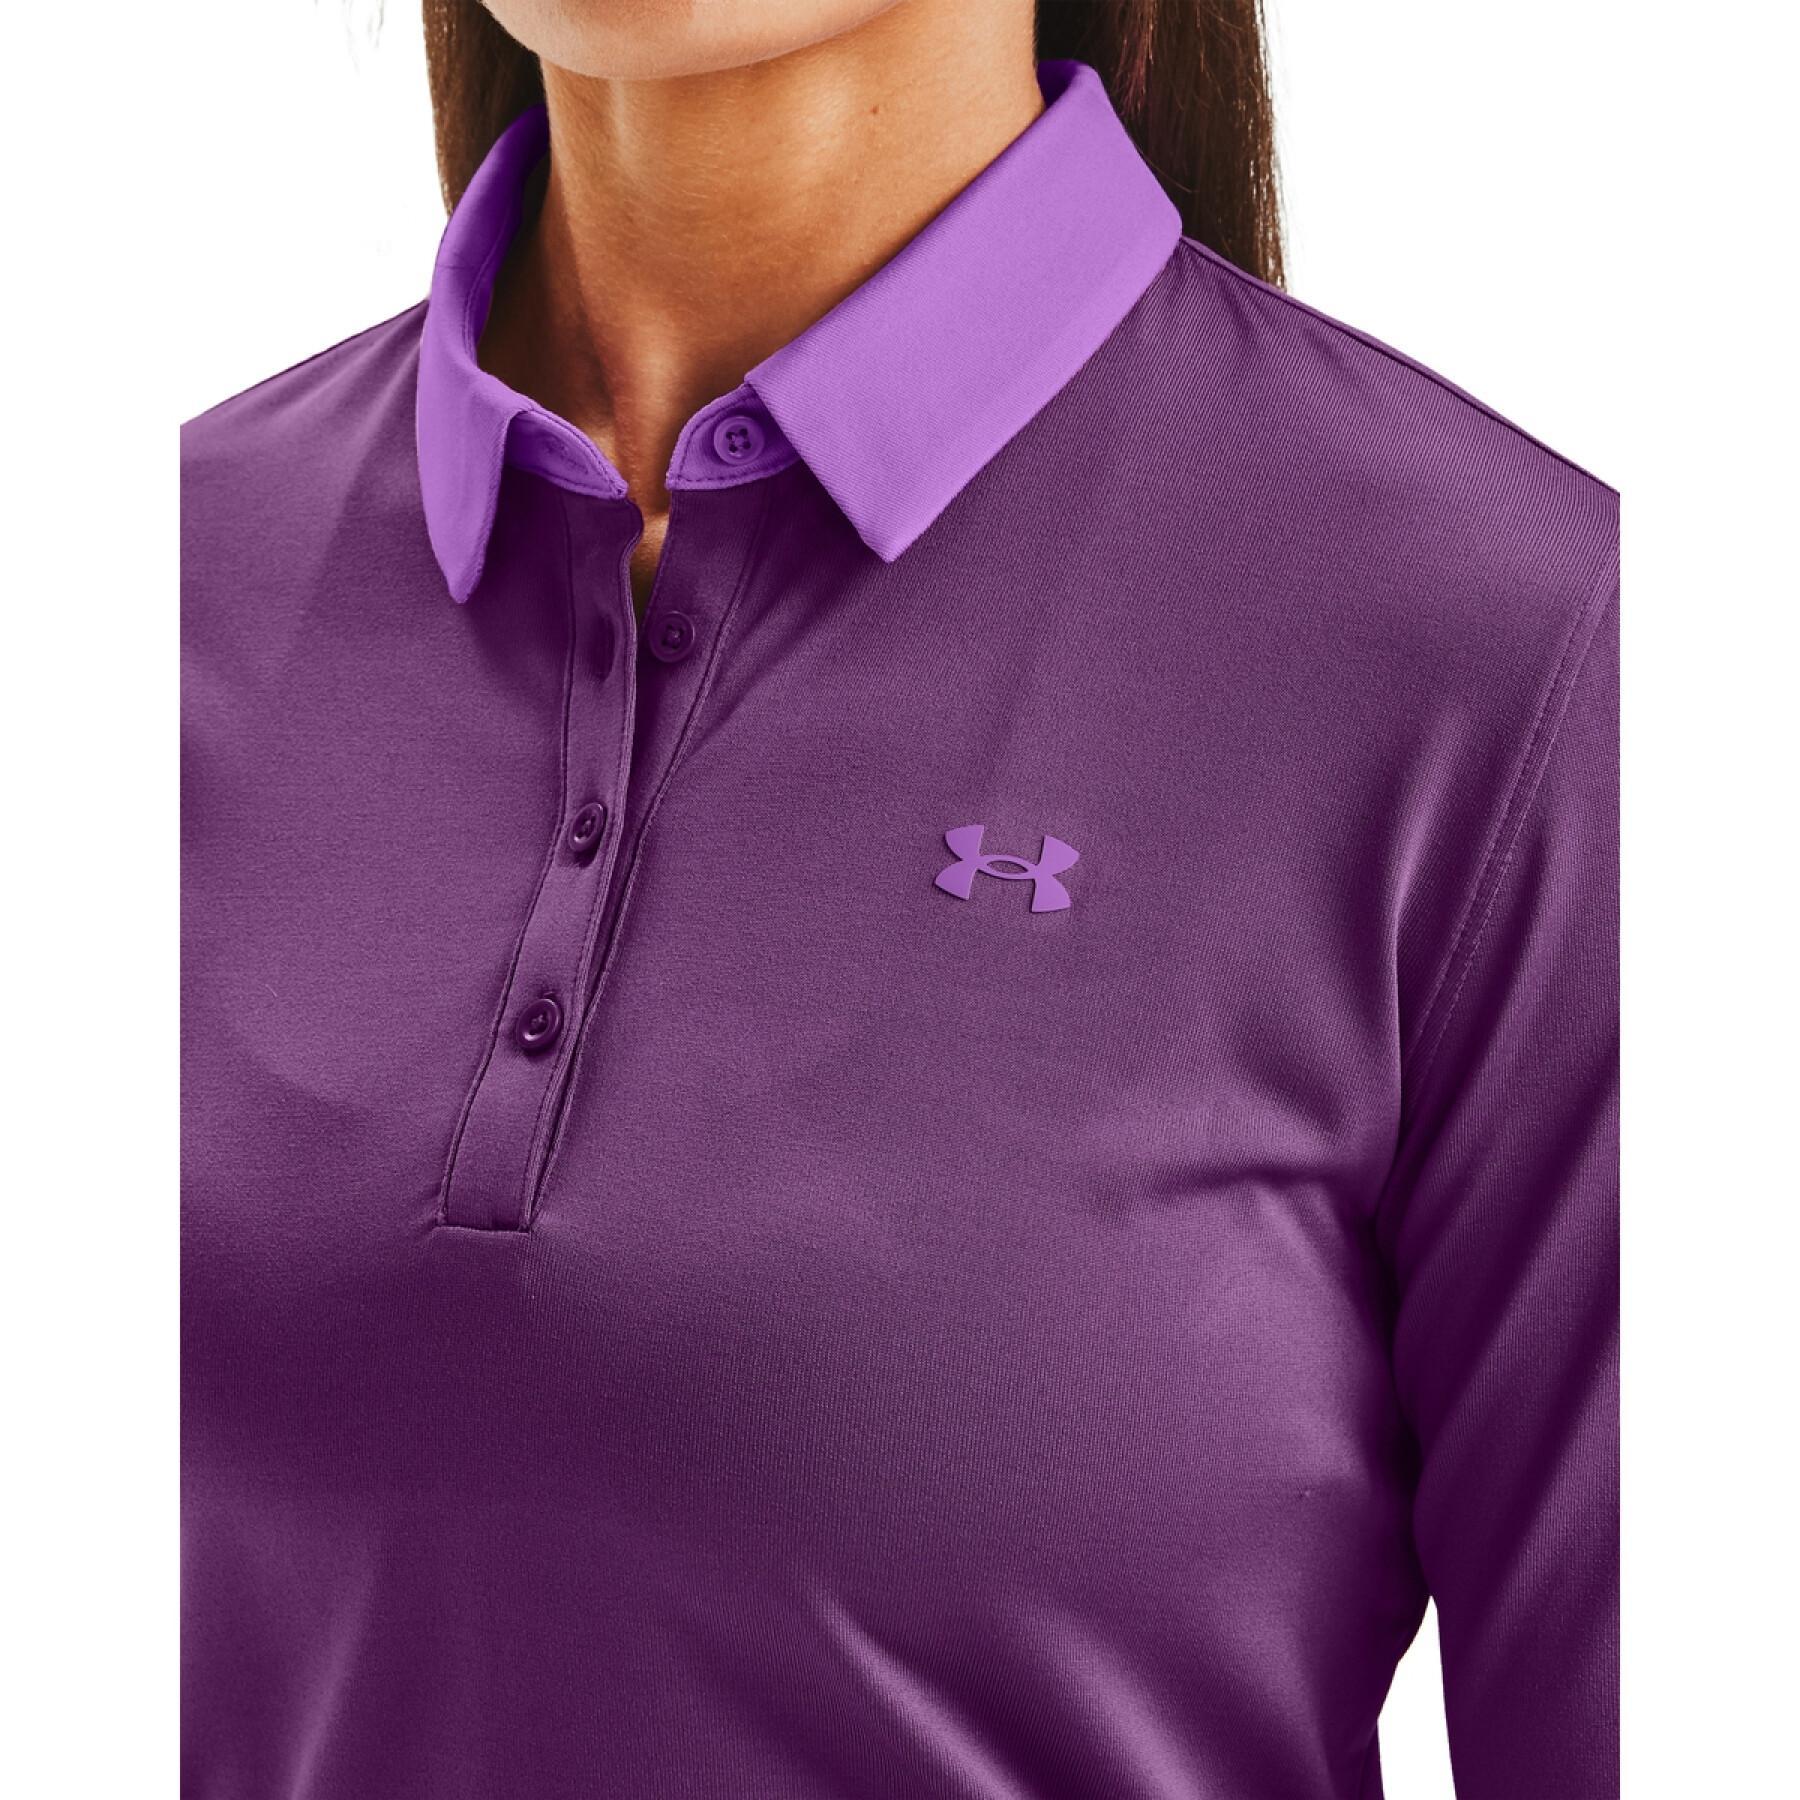 Women's polo shirt Under Armour à manches longues Zinger